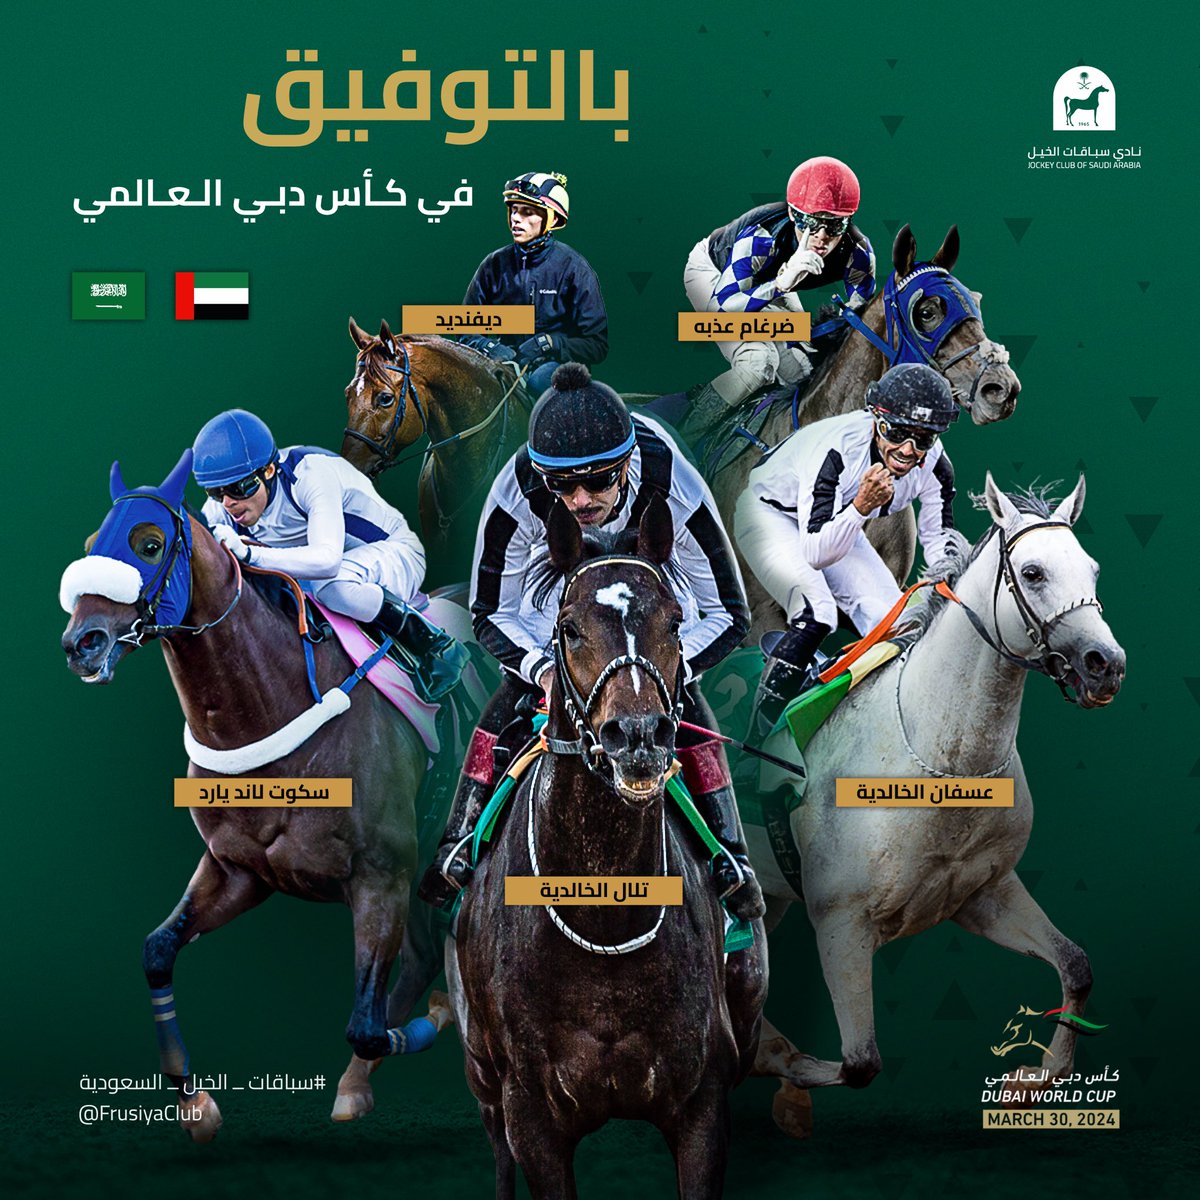 بالتوفيق لممثلي المملكة العربية السعودية #SaudiRacing المشاركين في سباقات أمسية كأس دبي العالمي 2024 #DWC24 🇦🇪 🇸🇦 @JCSA_Racing 🤝 @RacingDubai